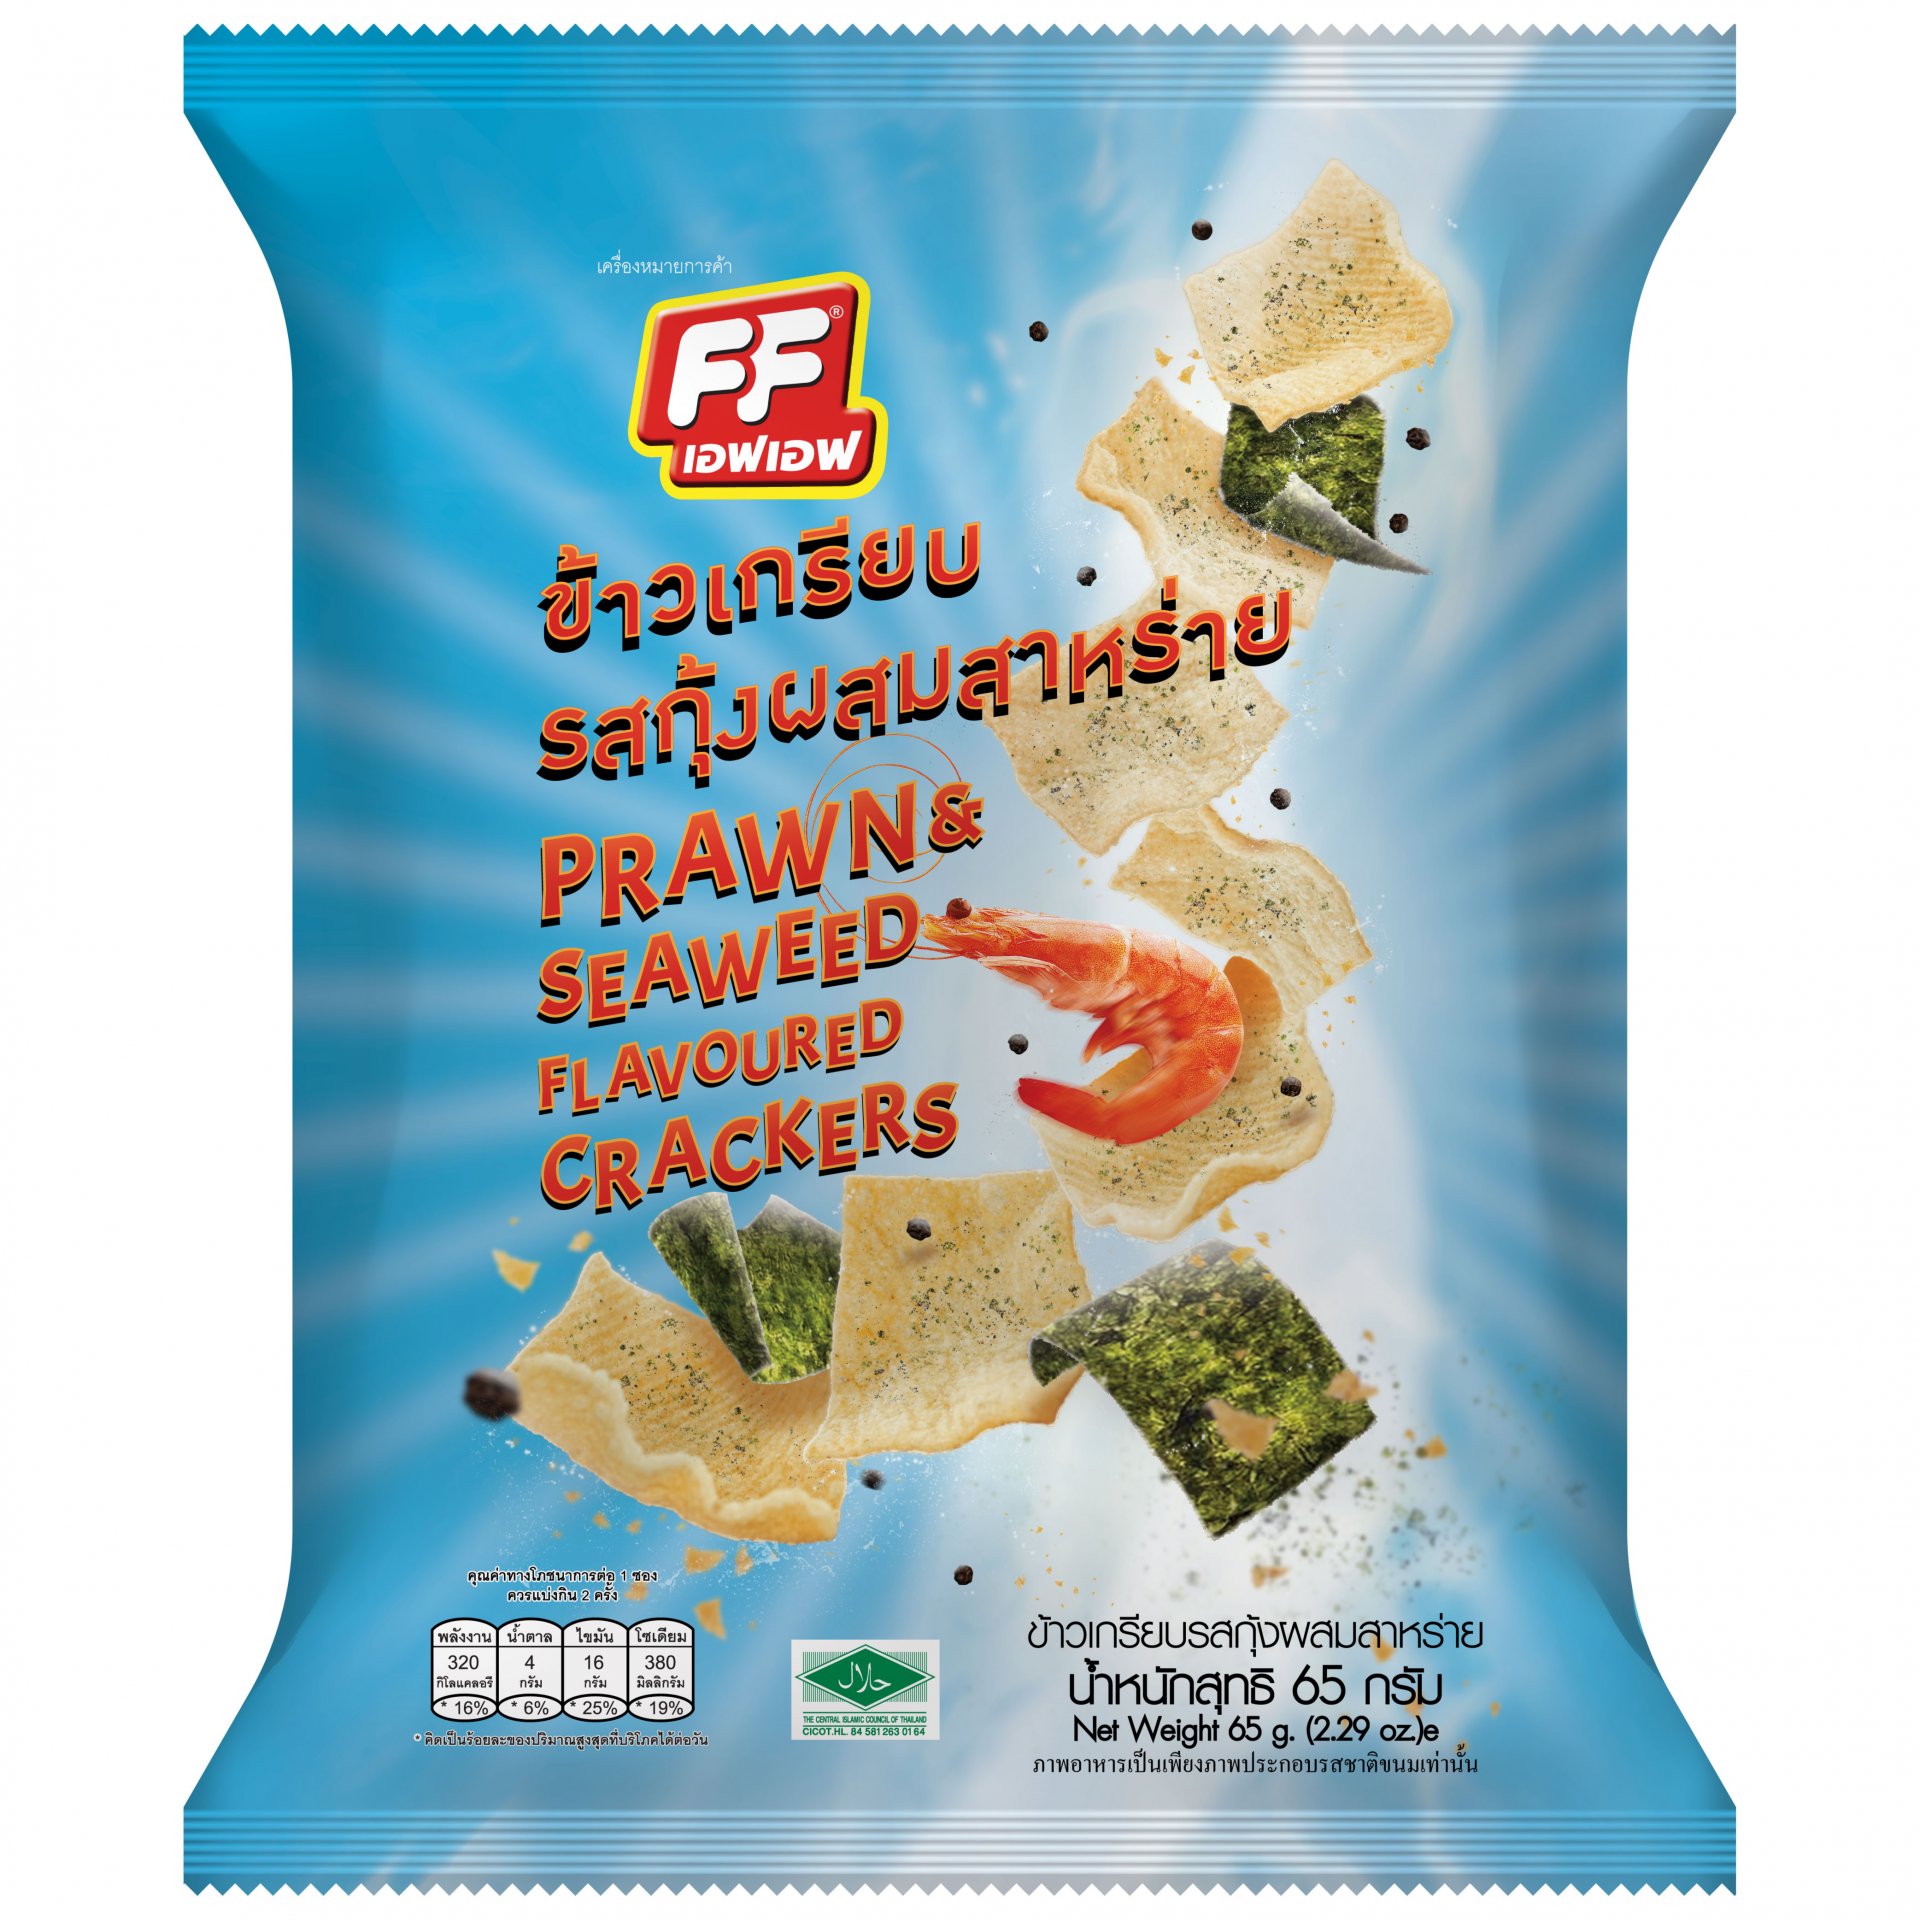 Prawn Seawees Flavoured Crackers